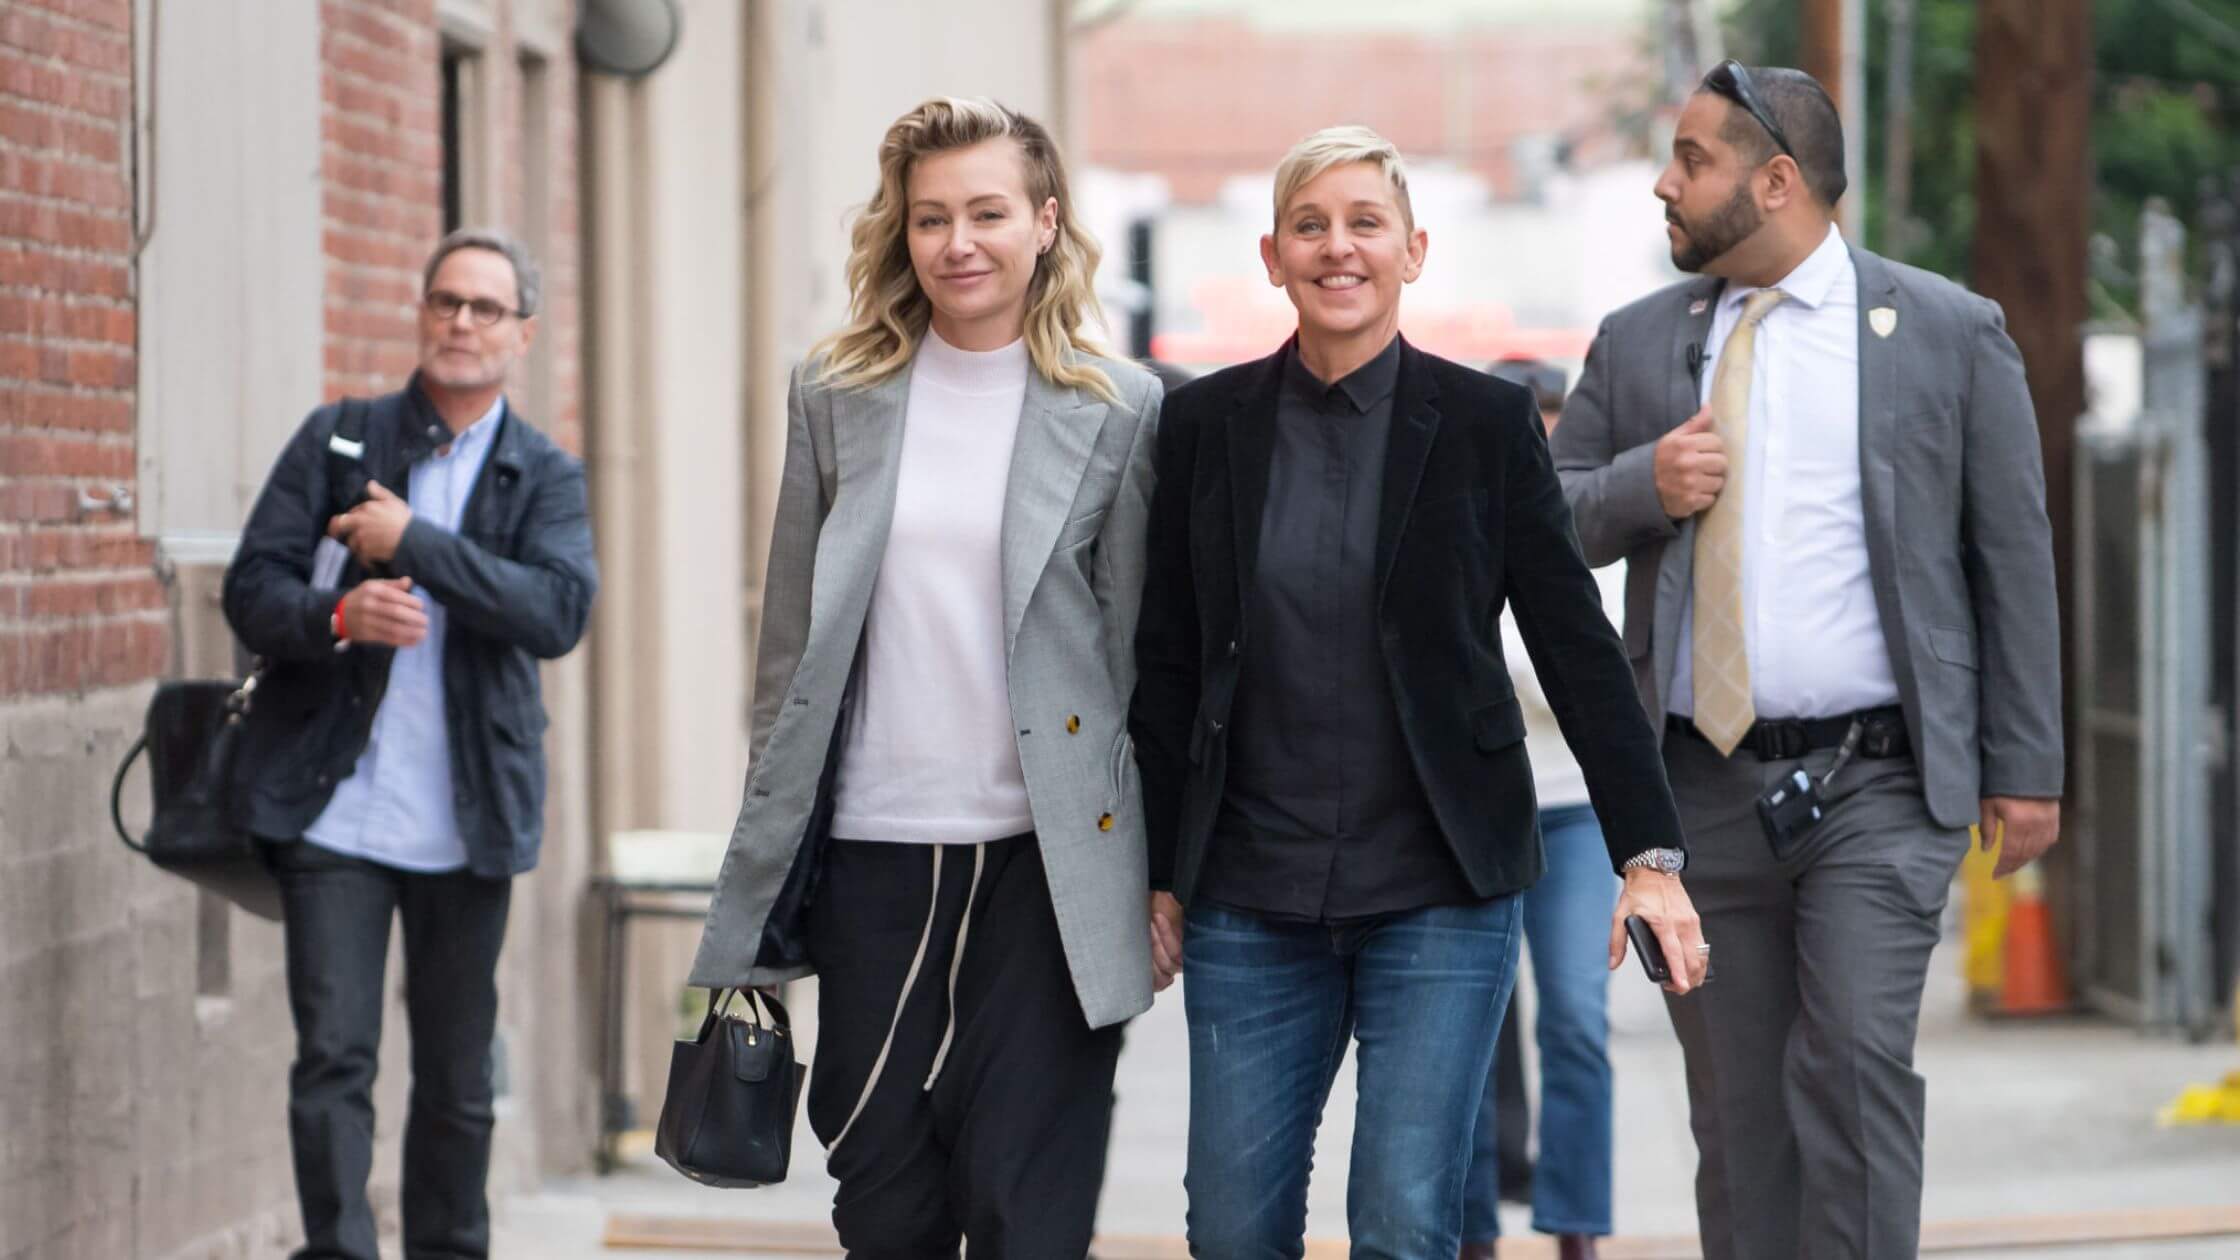 Ellen DeGeneres Vacations With Portia De Rossi After Talk Show Ends